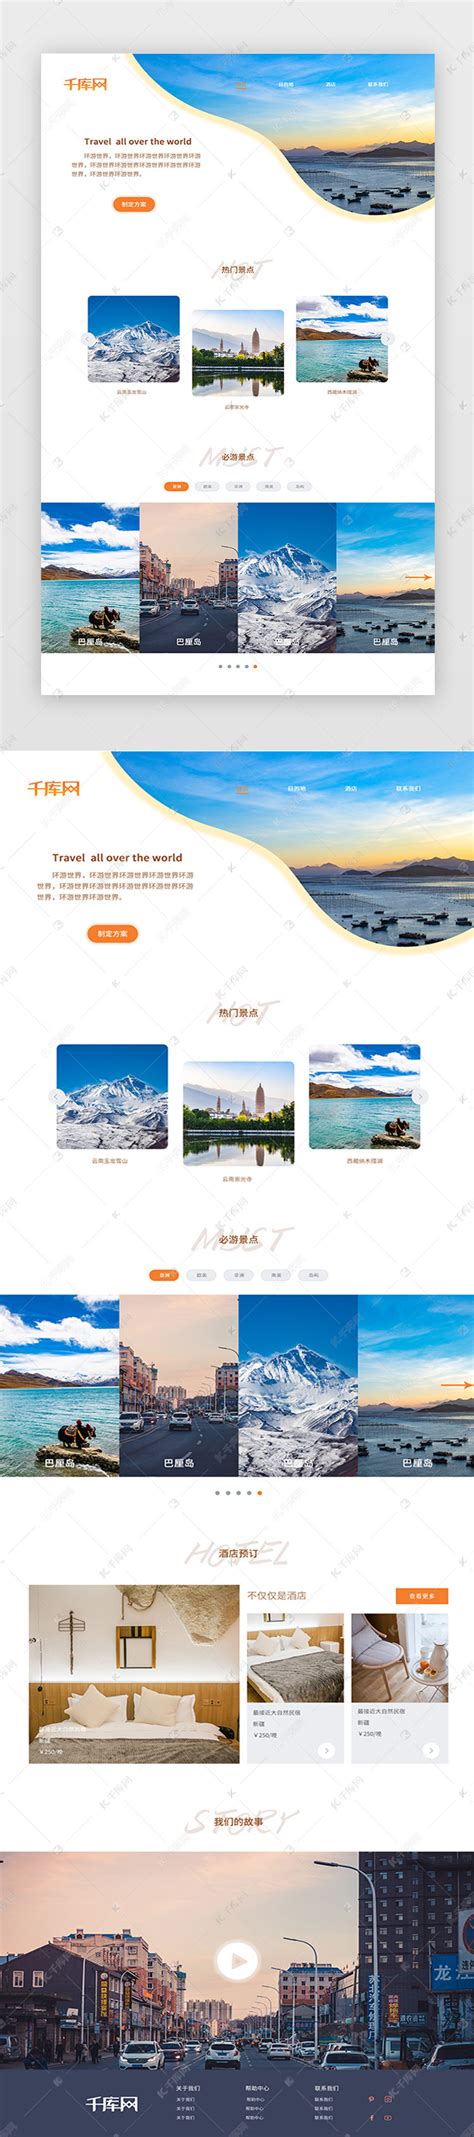 旅游网站首页设计ui界面设计素材-千库网